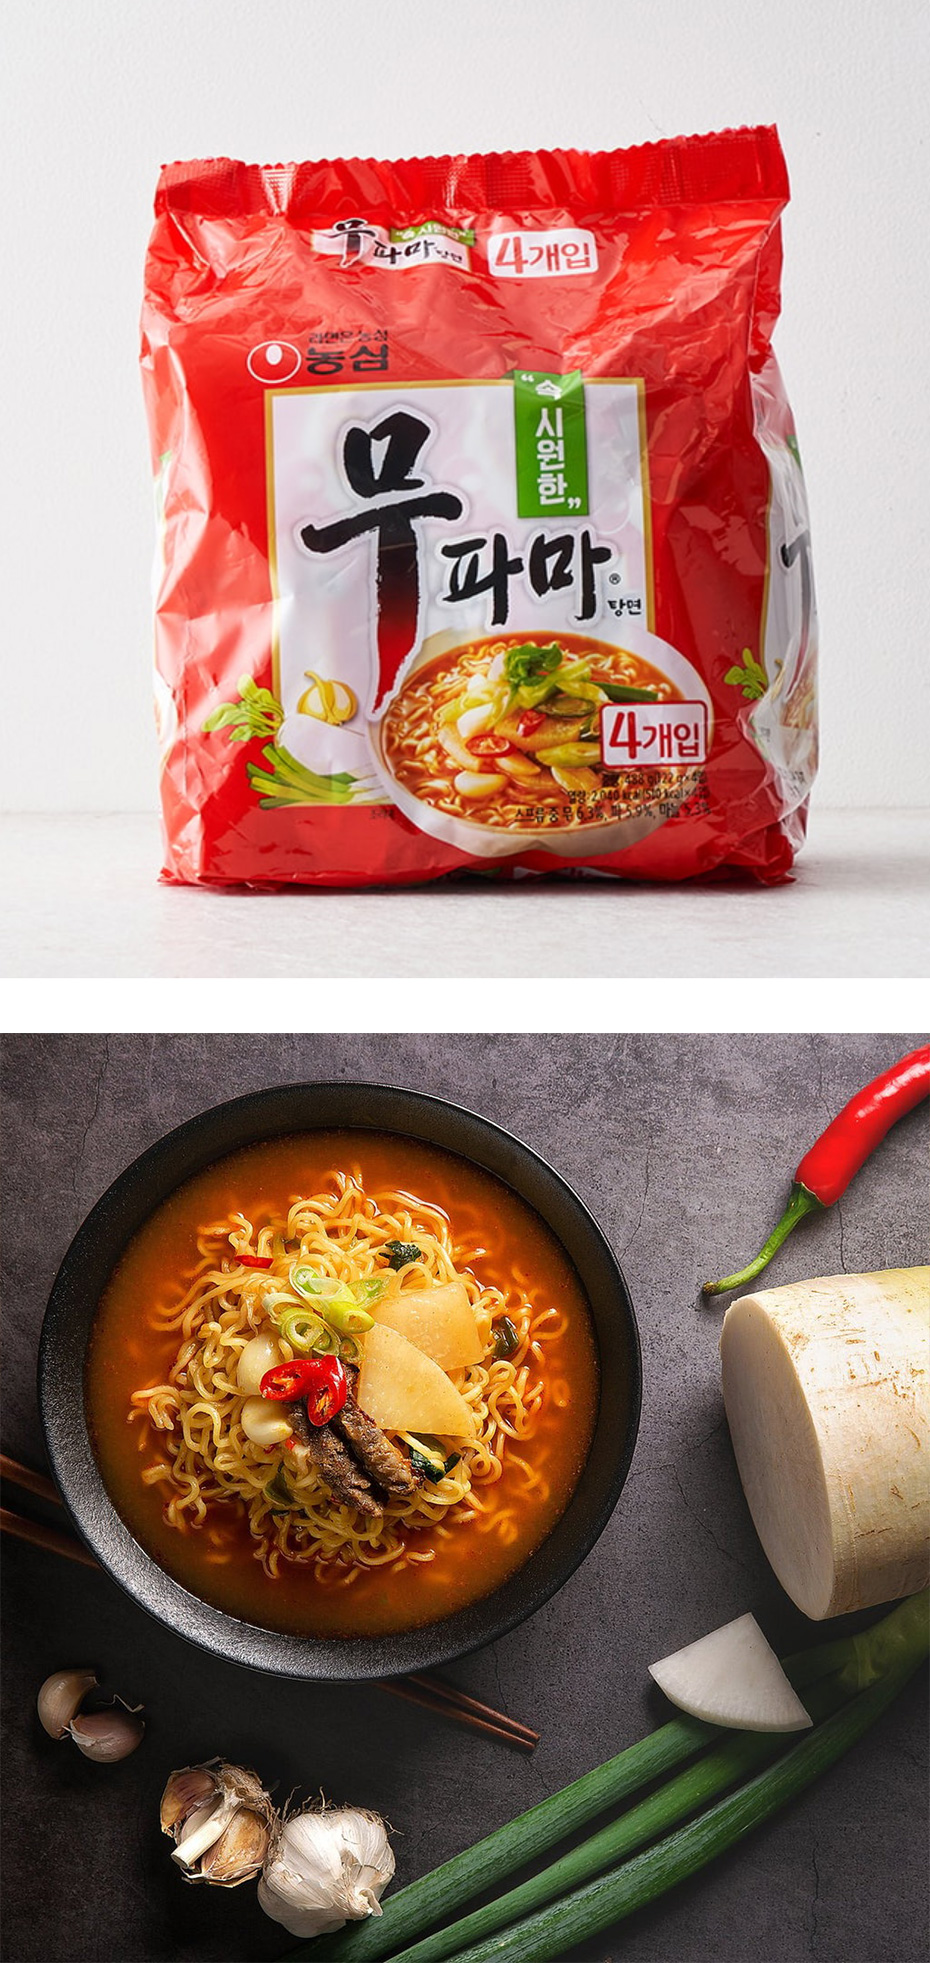 [農心] ムパマ湯麺 / 122g(4食入) 袋ラーメン ノンシム インスタントラーメン 韓国らーめん すっきりとした韓国出番ラーメン